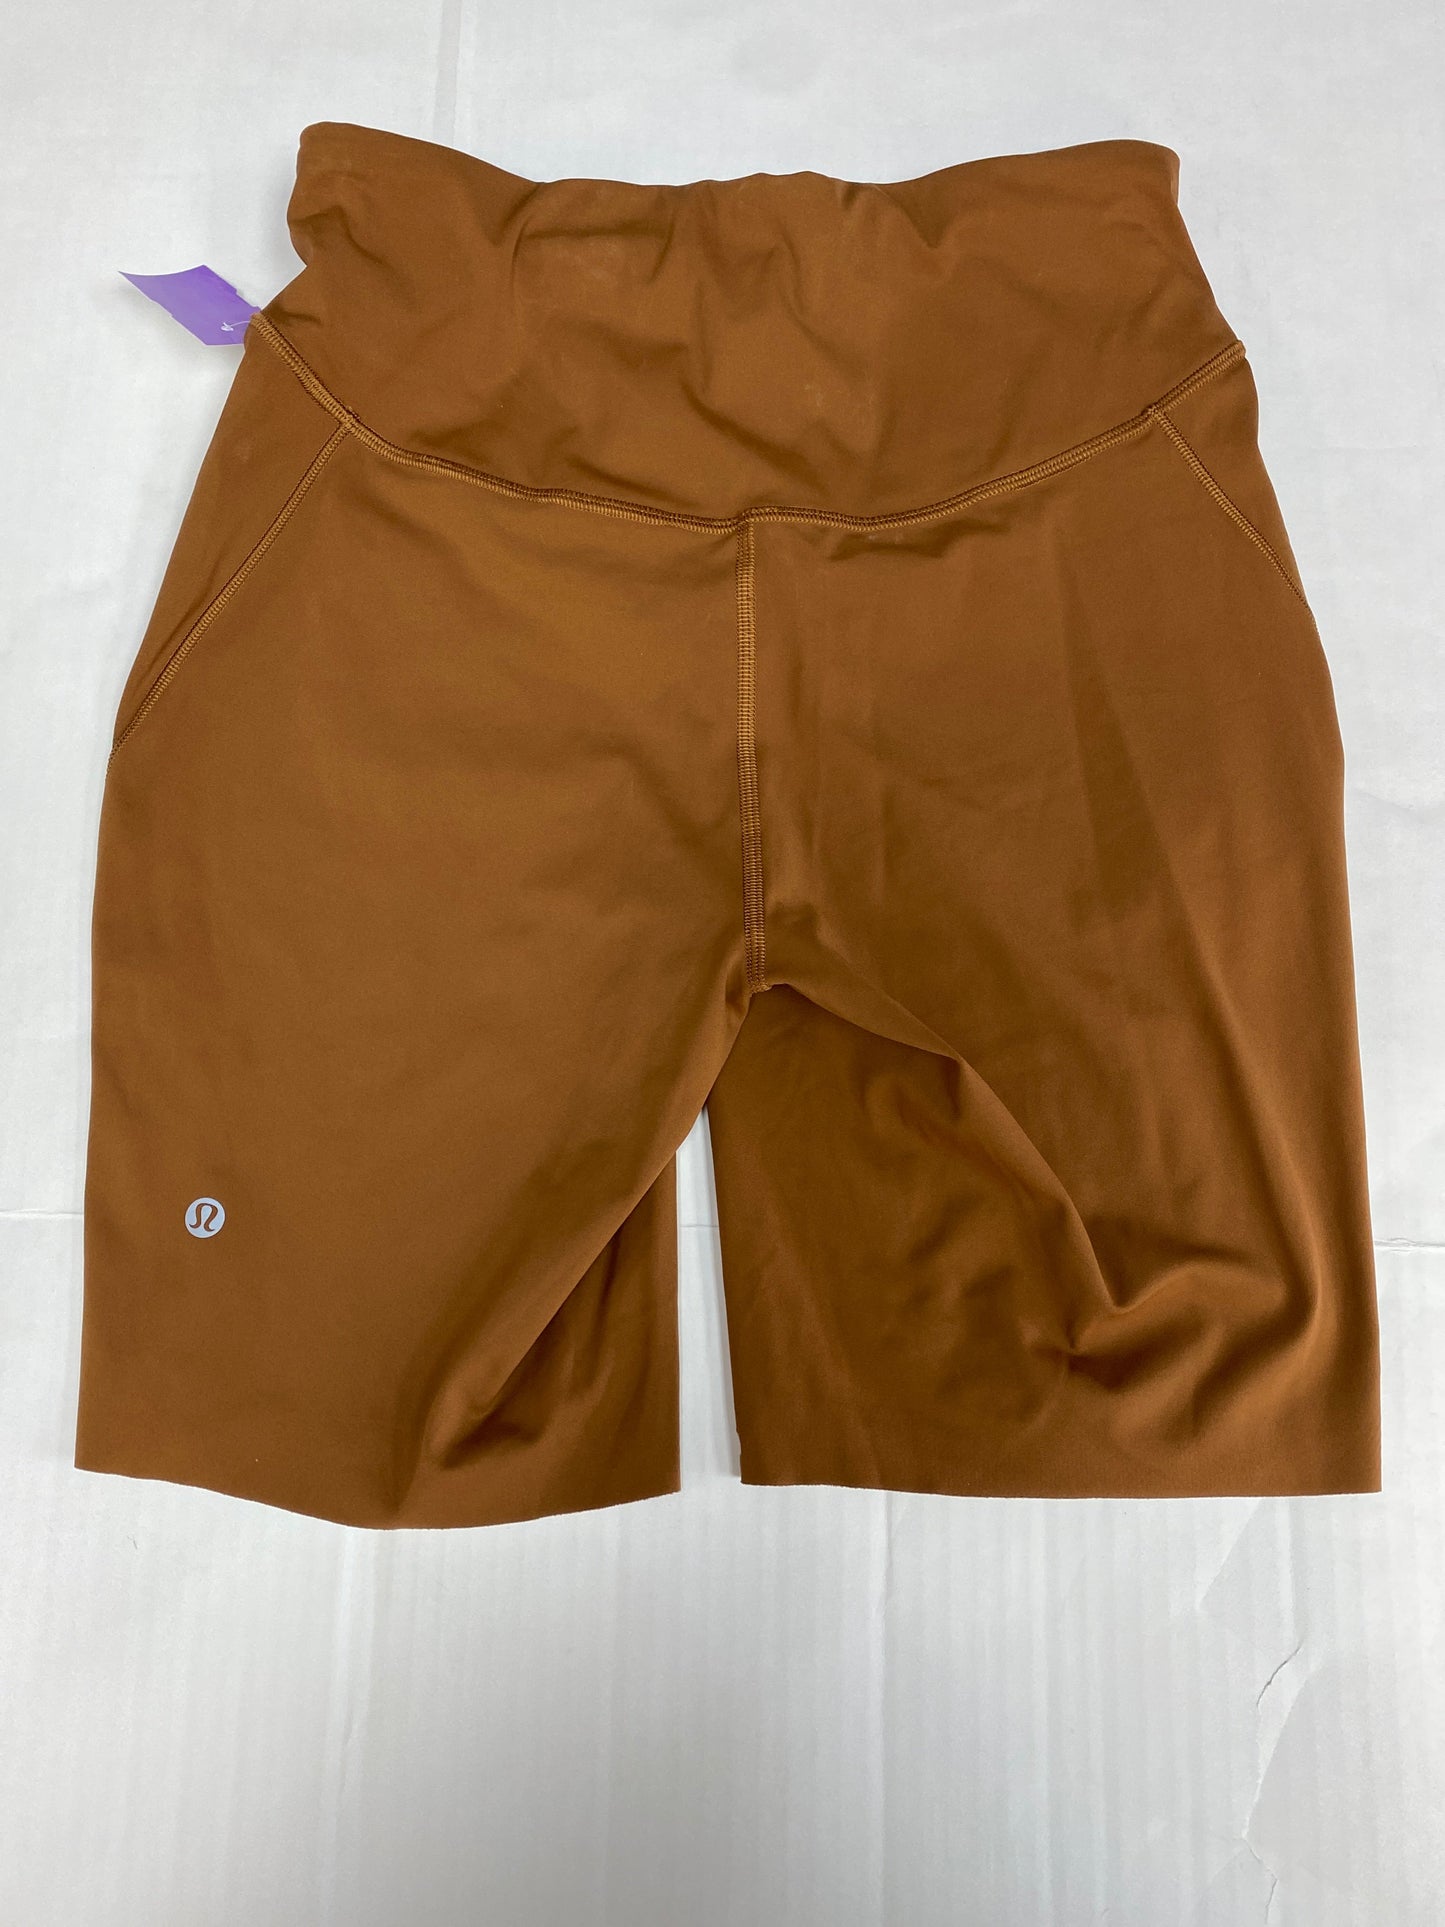 Brown Athletic Shorts Lululemon, Size 10